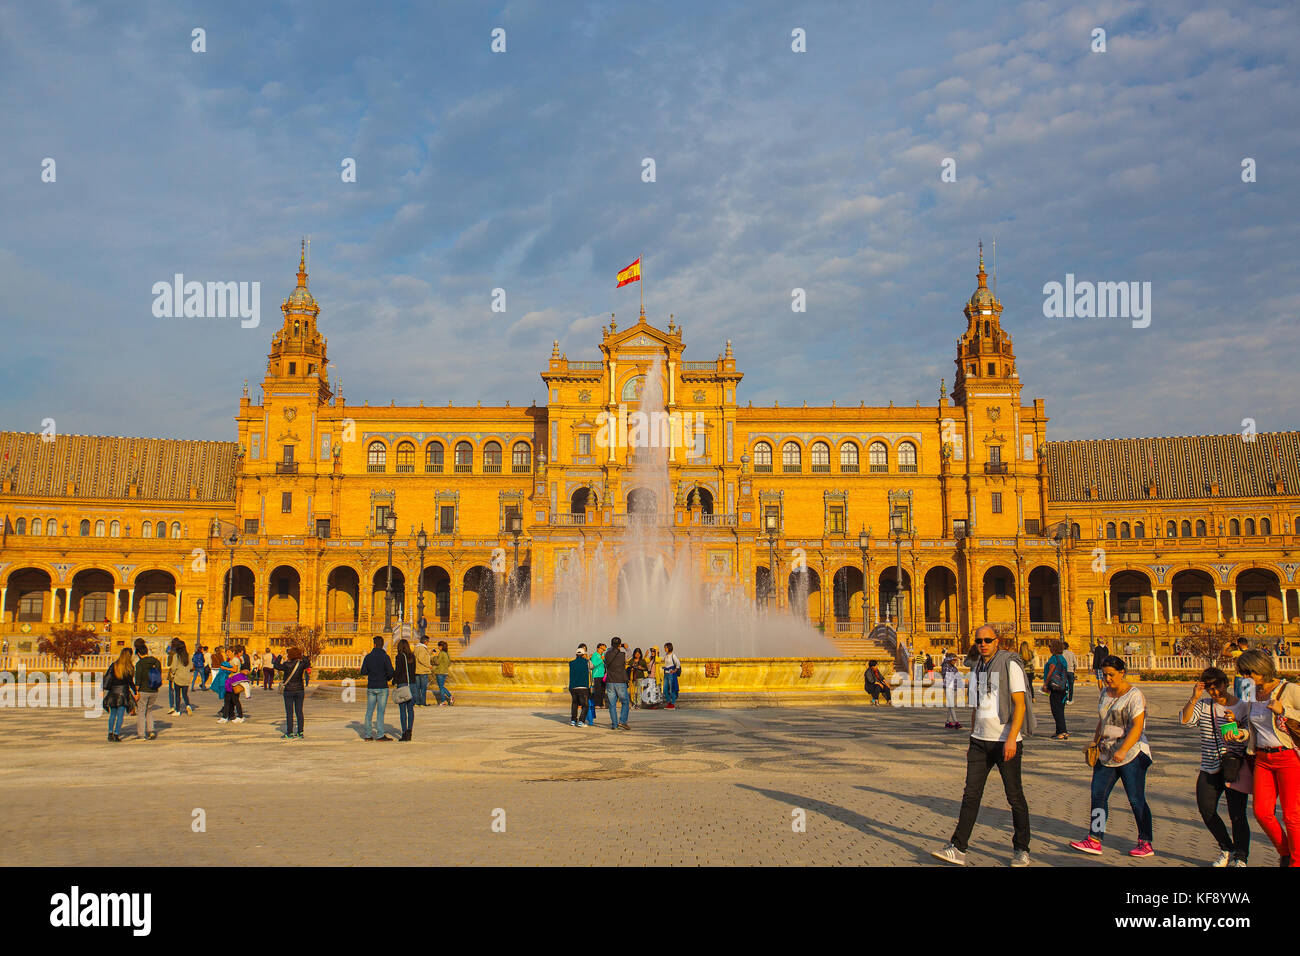 Séville, Espagne - novembre 18,2016 : vue sur la plaza de Espana complexe, construit en 1929, est un immense demi-cercle avec une superficie totale de 50 000 mètres carrés Banque D'Images